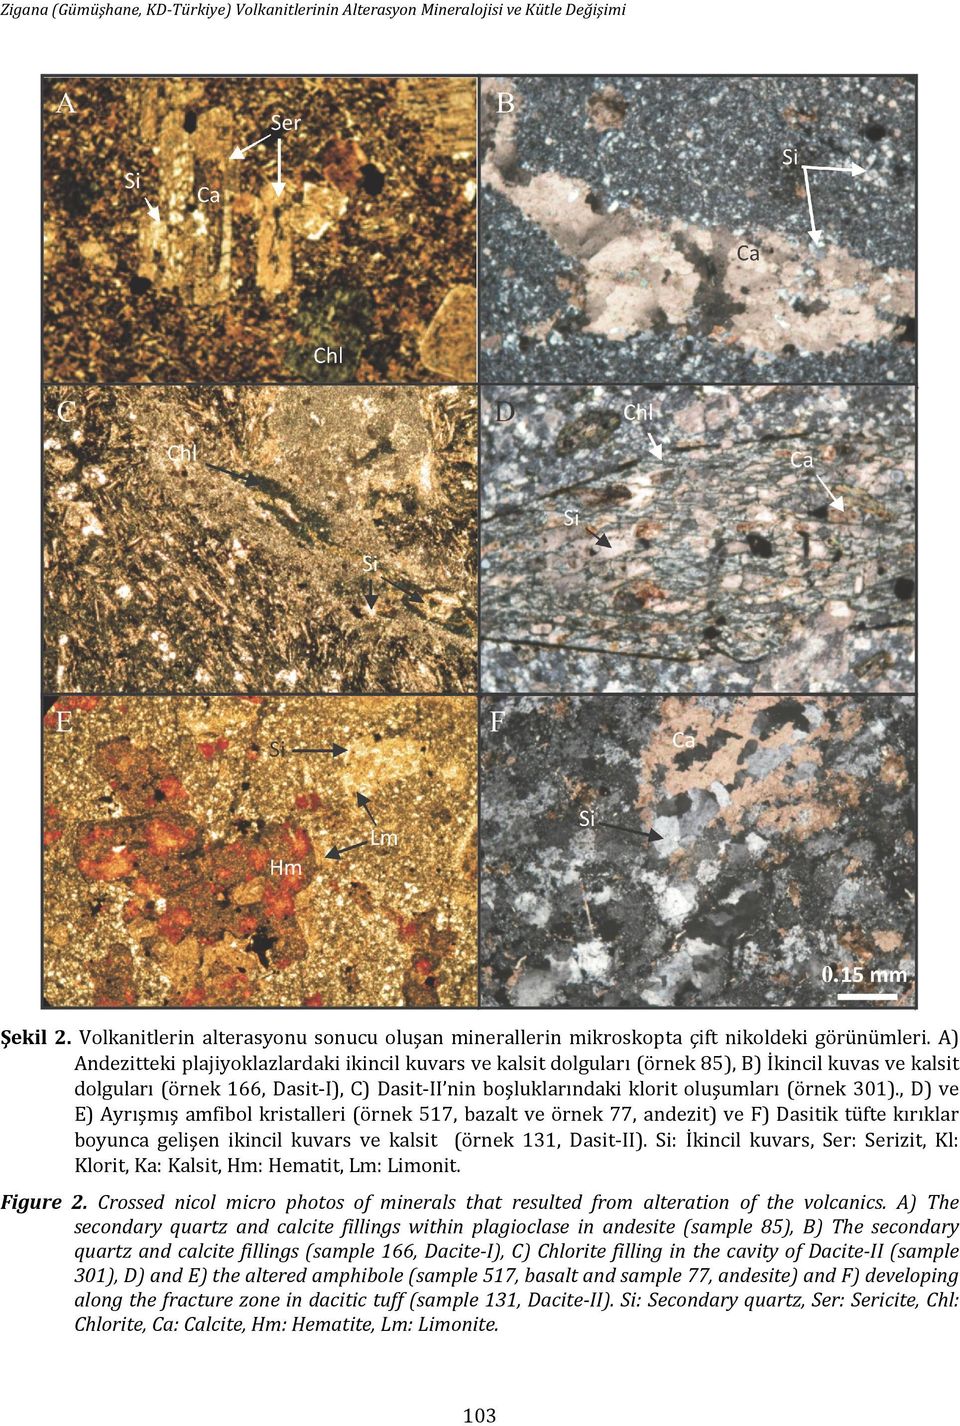 301)., D) ve E) Ayrışmış amfibol kristalleri (örnek 517, bazalt ve örnek 77, andezit) ve F) Dasitik tüfte kırıklar boyunca gelişen ikincil kuvars ve kalsit (örnek 131, Dasit-II).